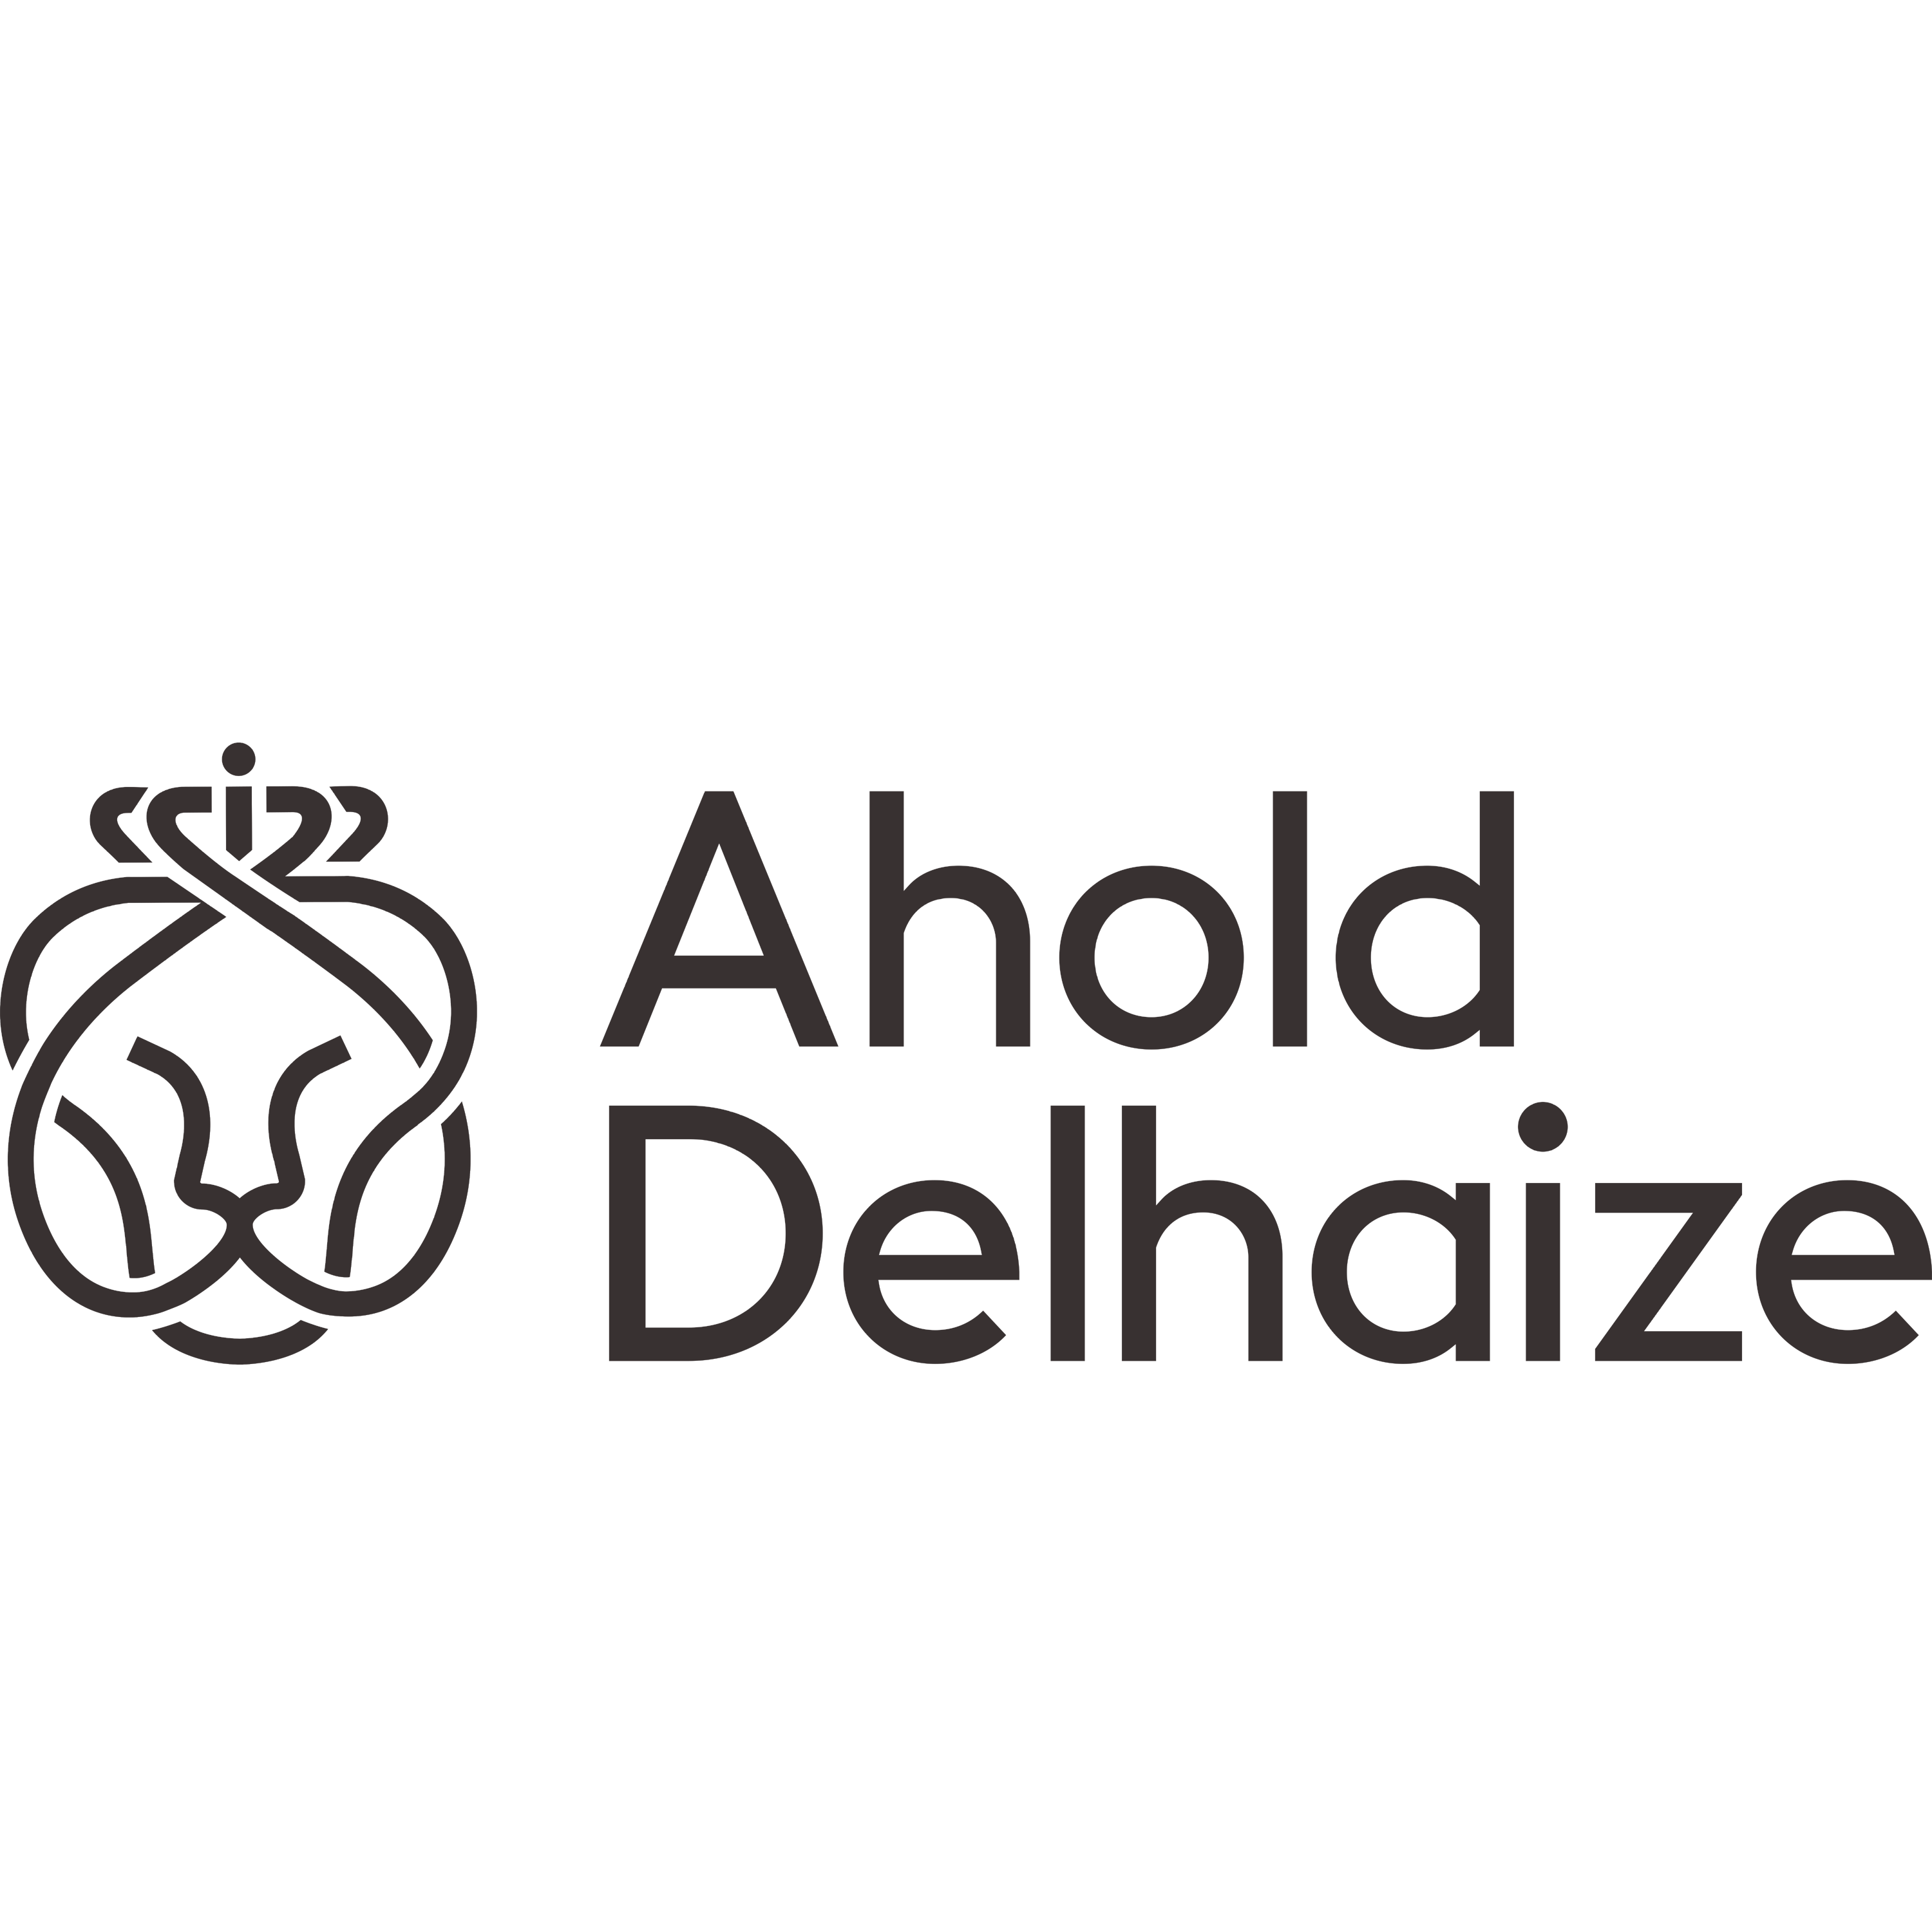 Ahold Delhaize Logo Transparent Picture